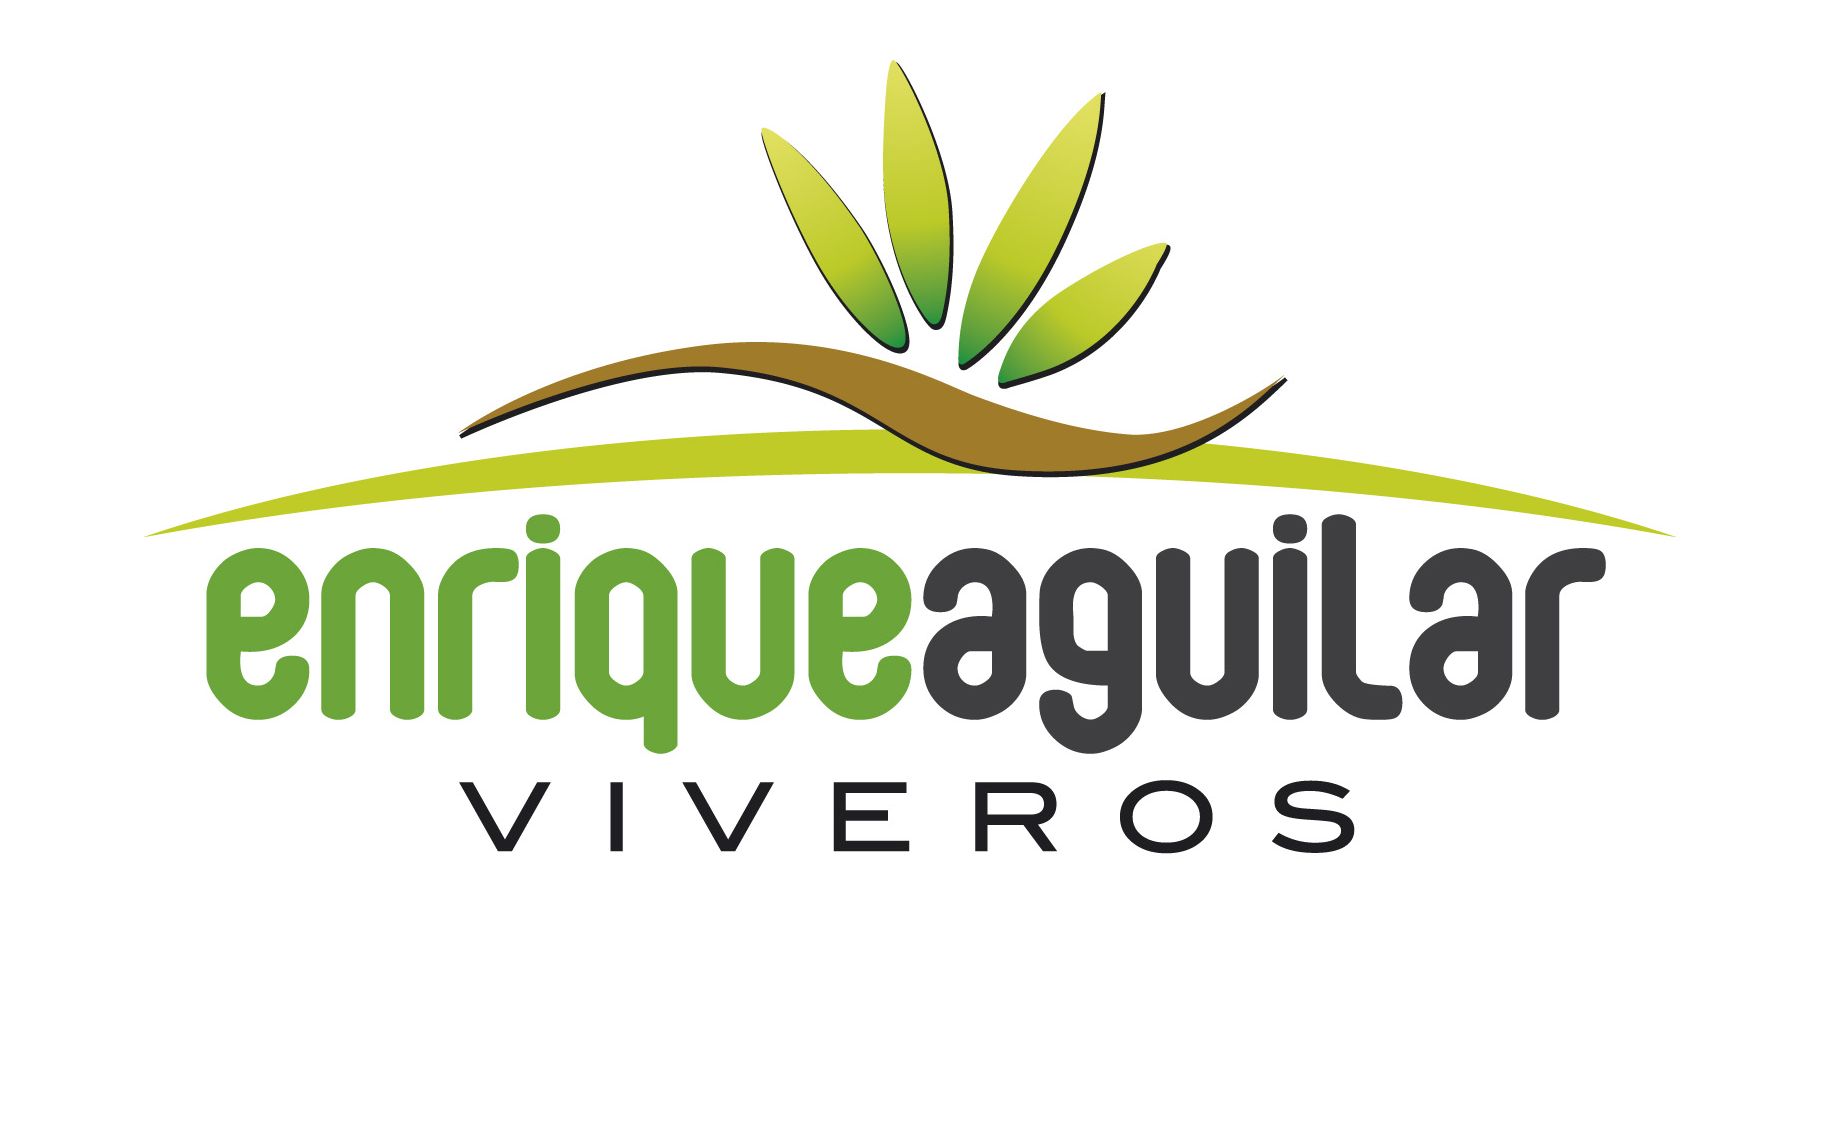 Viveros Enrique Aguilar